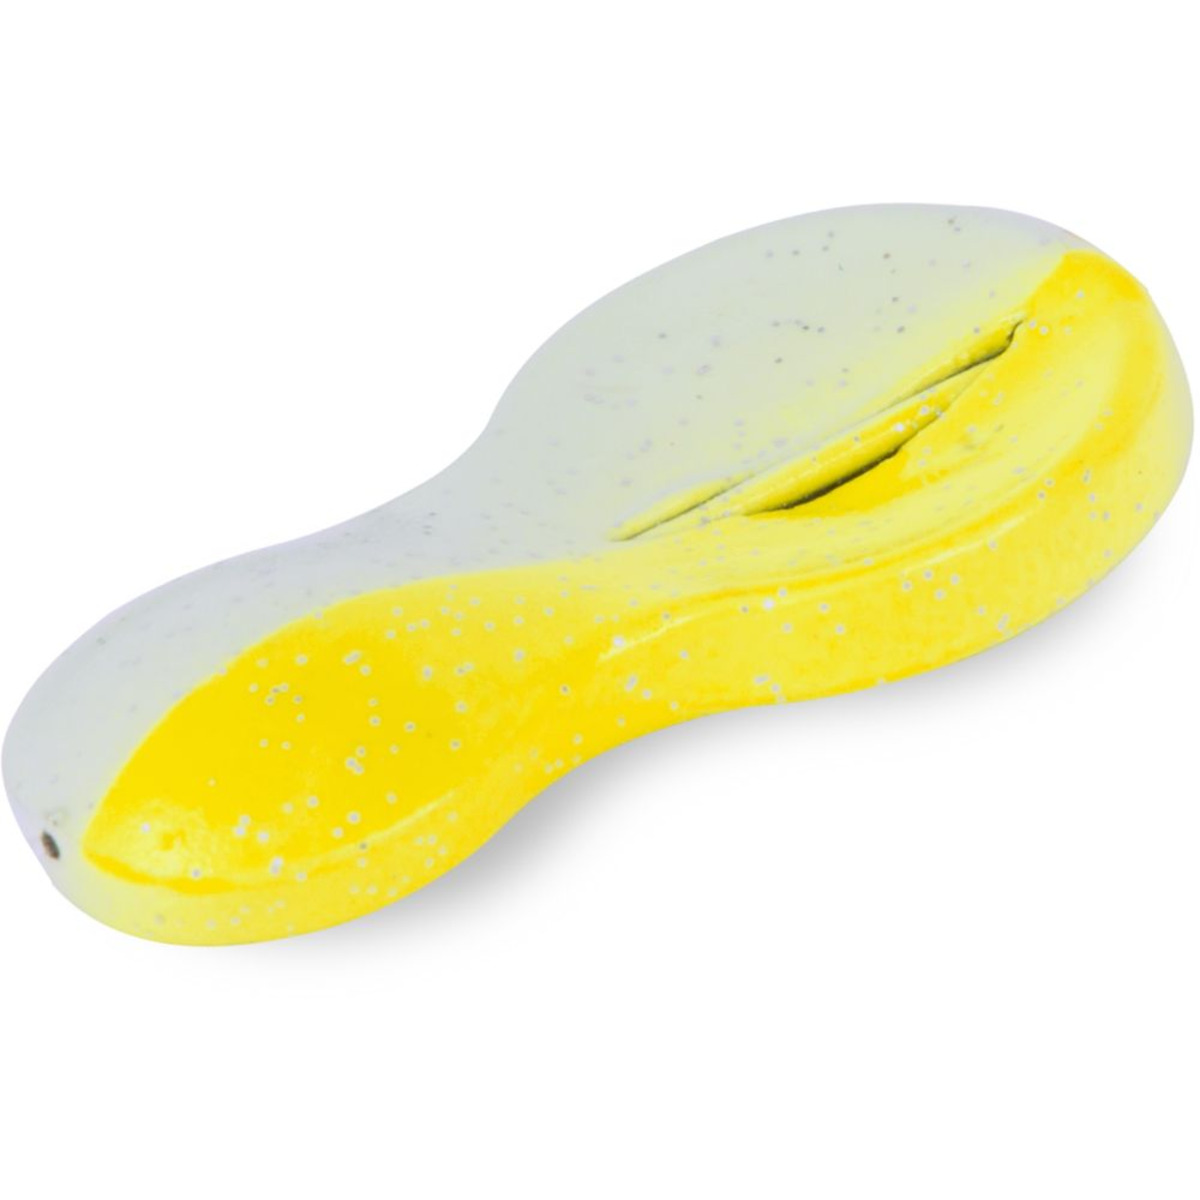 Zebco Z-sea Flatty Teaser Inline, Lead Free - 80 g - yellow/glow in the dark